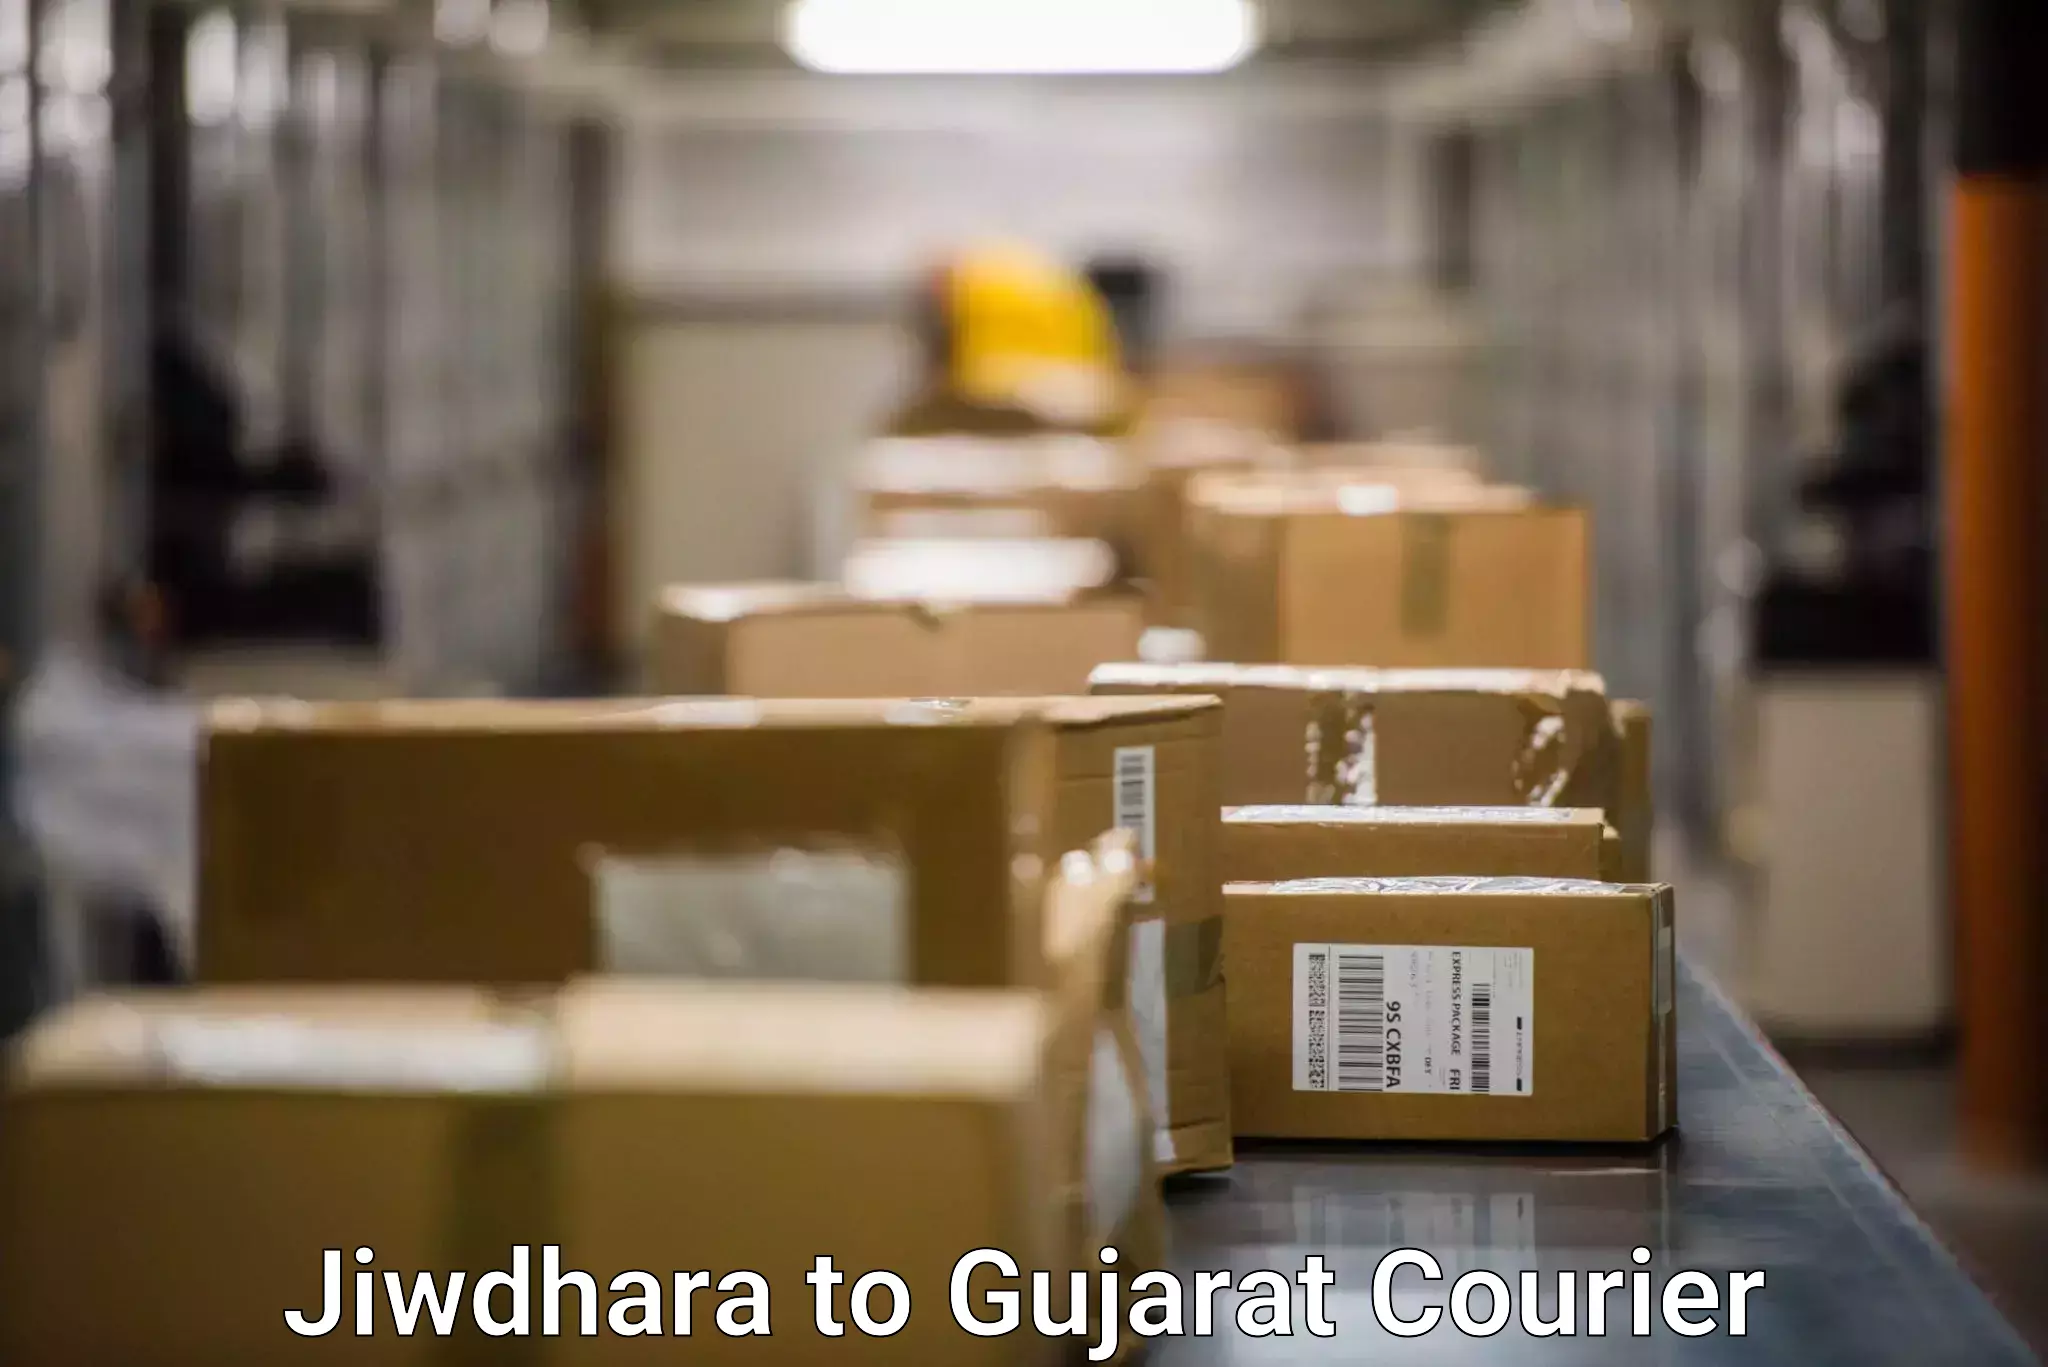 Quick booking process Jiwdhara to Gujarat